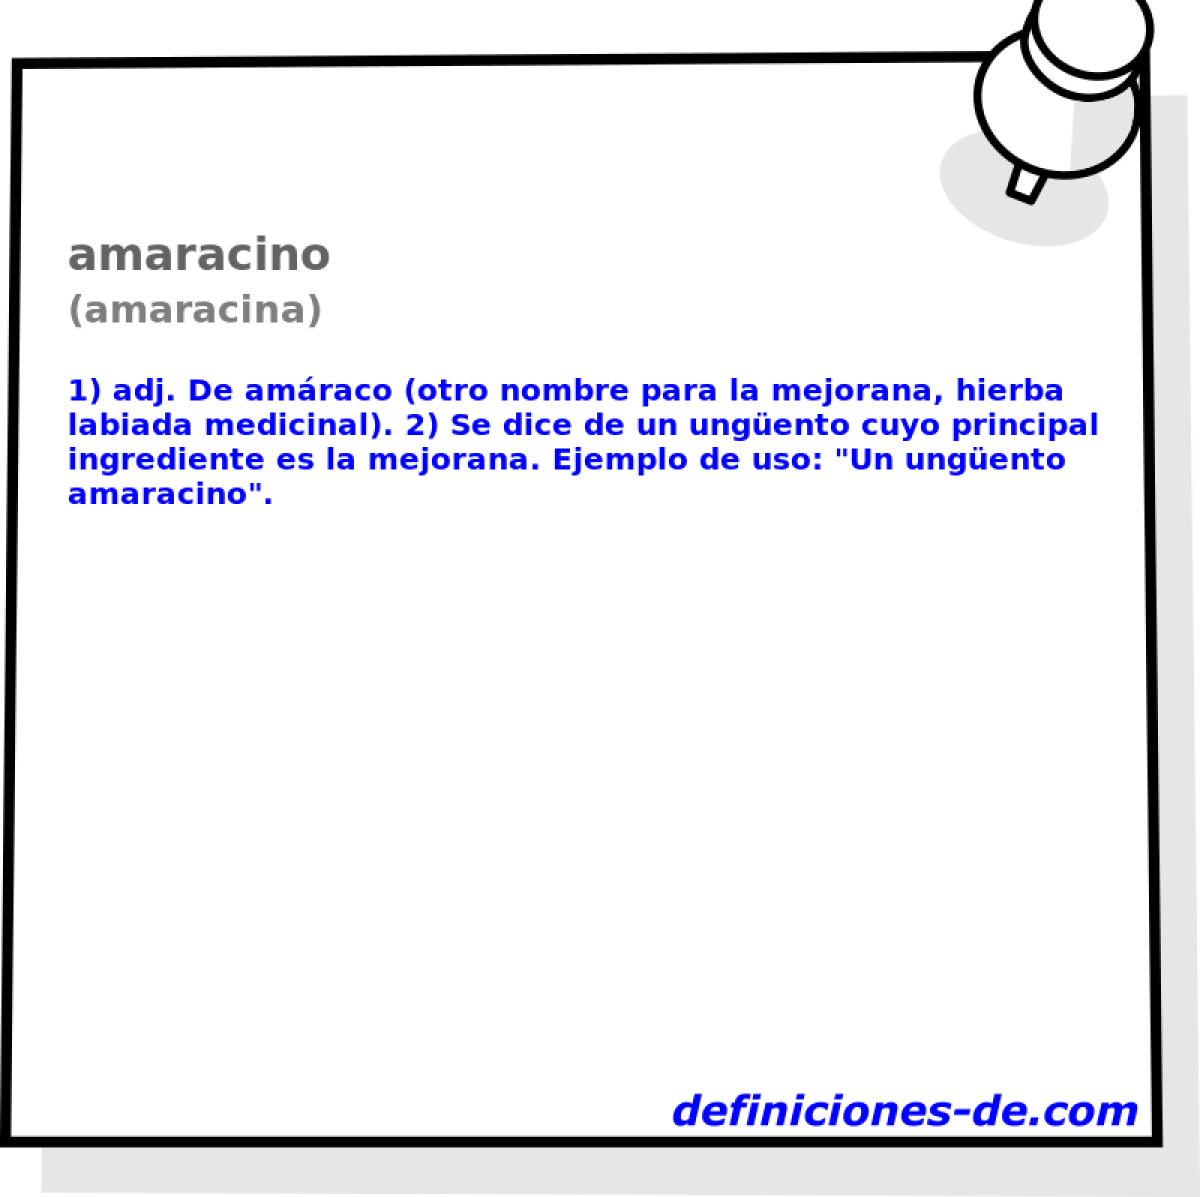 amaracino (amaracina)